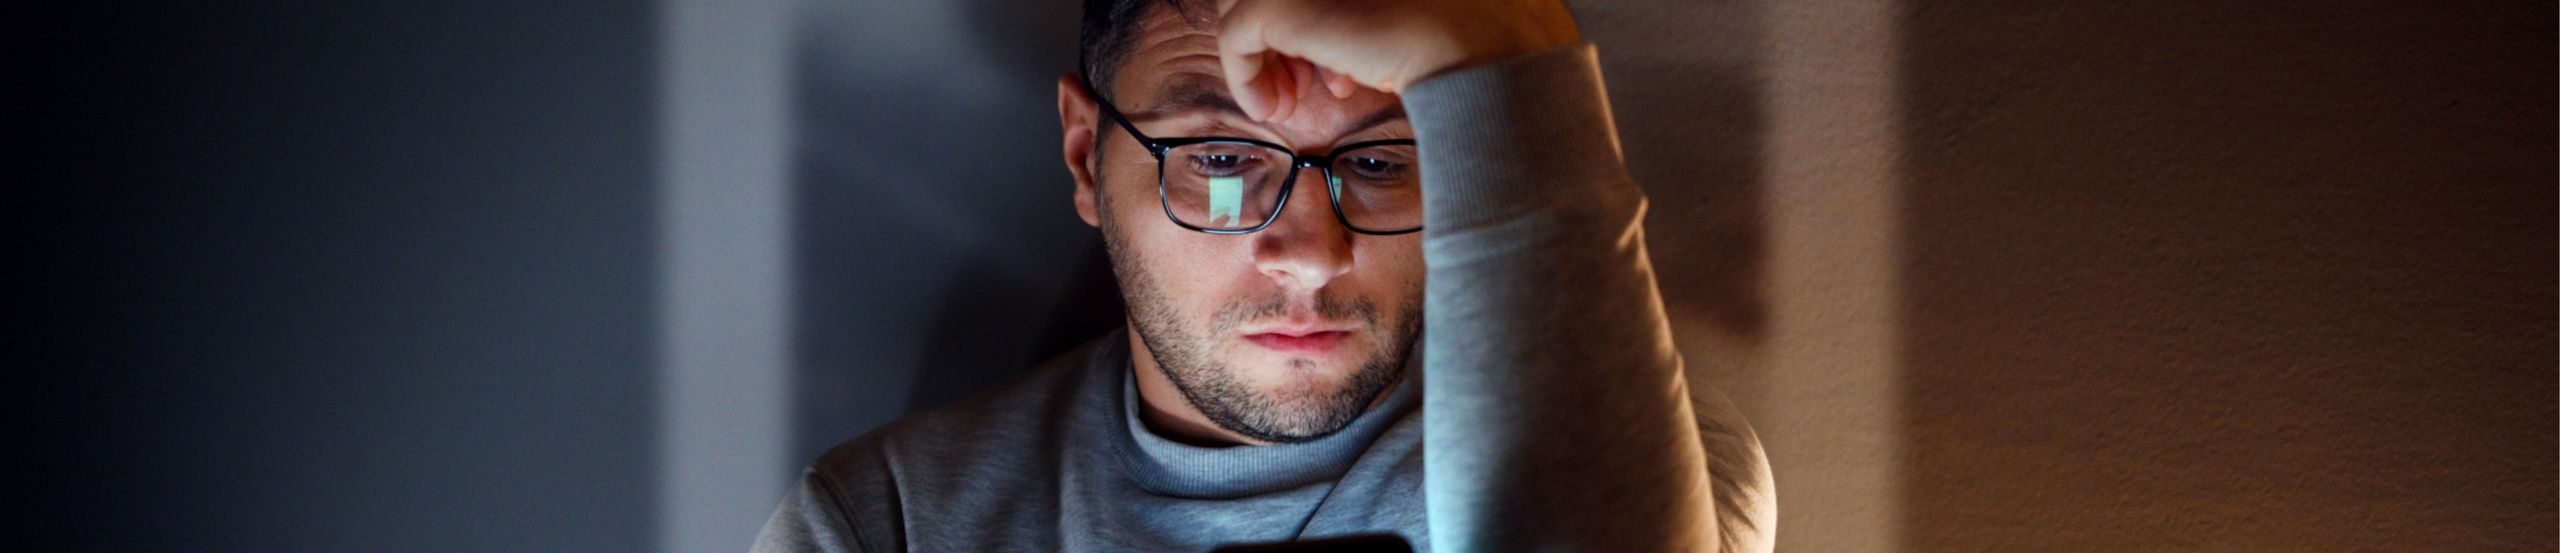 Ein Mann mit Brille sitzt in einem abgedunkelten Raum und betrachtet sein Smartphone